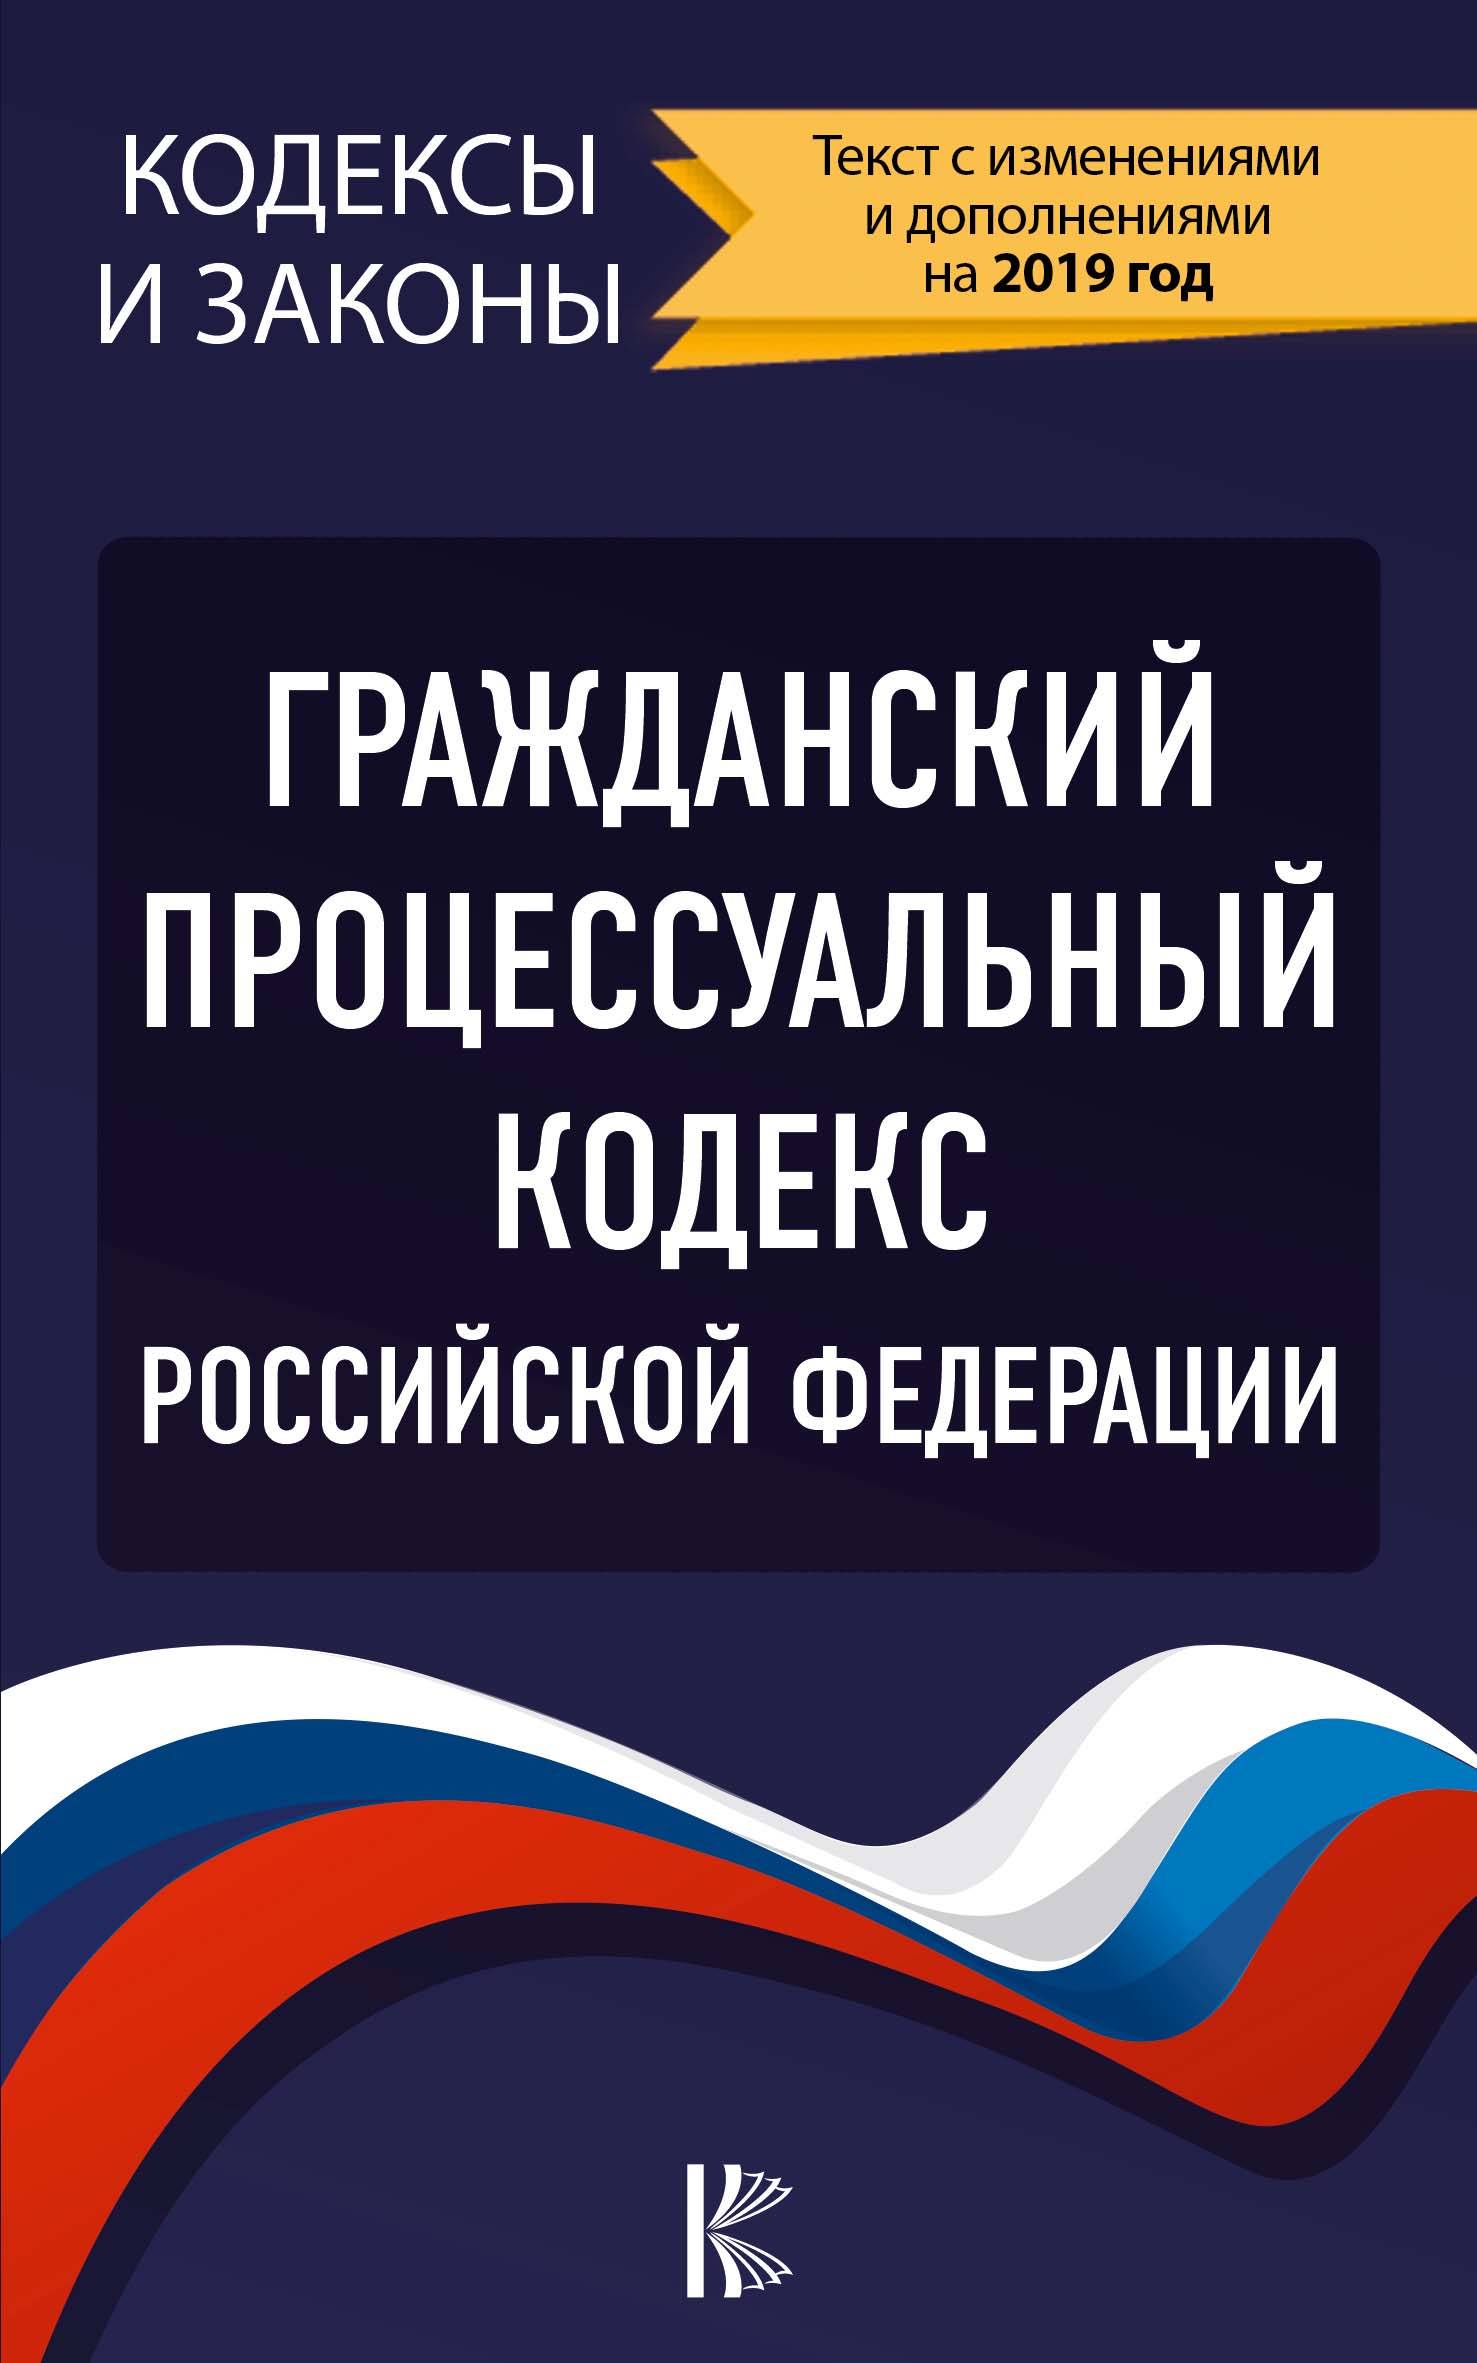 Гражданский процессуальный Кодекс Российской Федерации на 1 марта 2020 года